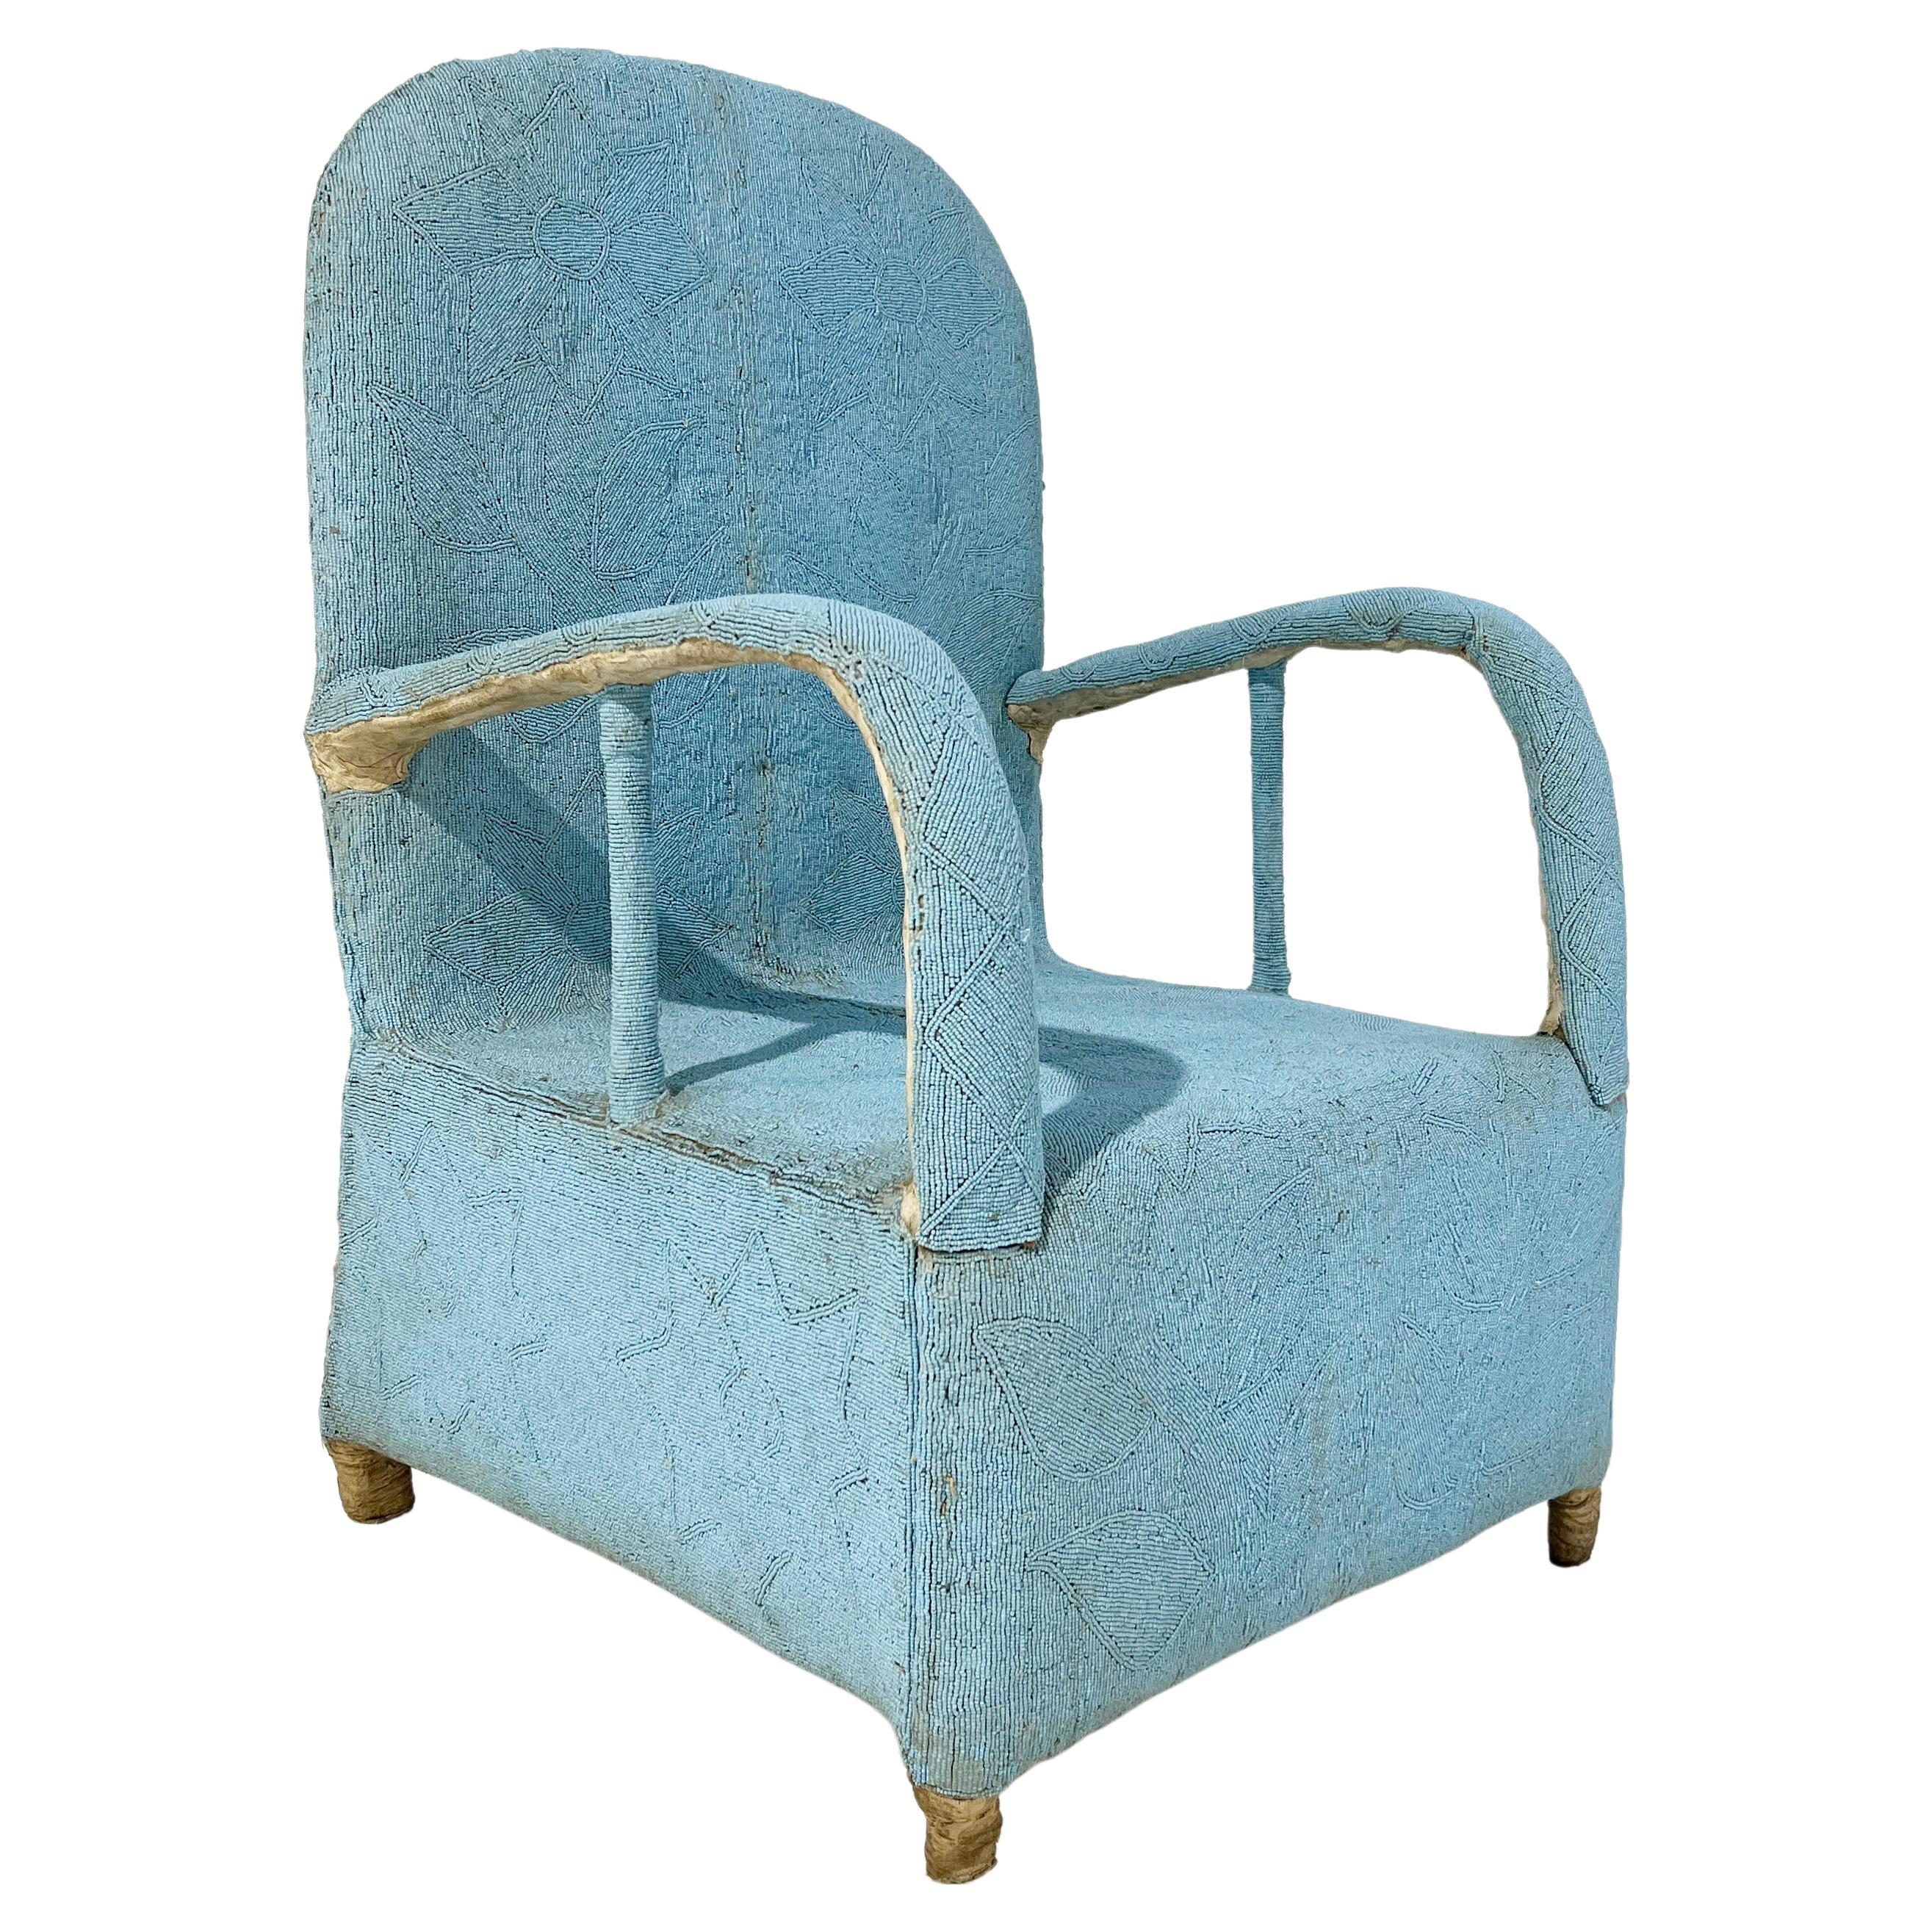 Afrikanischer Yoruba-Stuhl mit Perlenbesatz, mehrfarbig, 2 Stühle verfügbar im Angebot